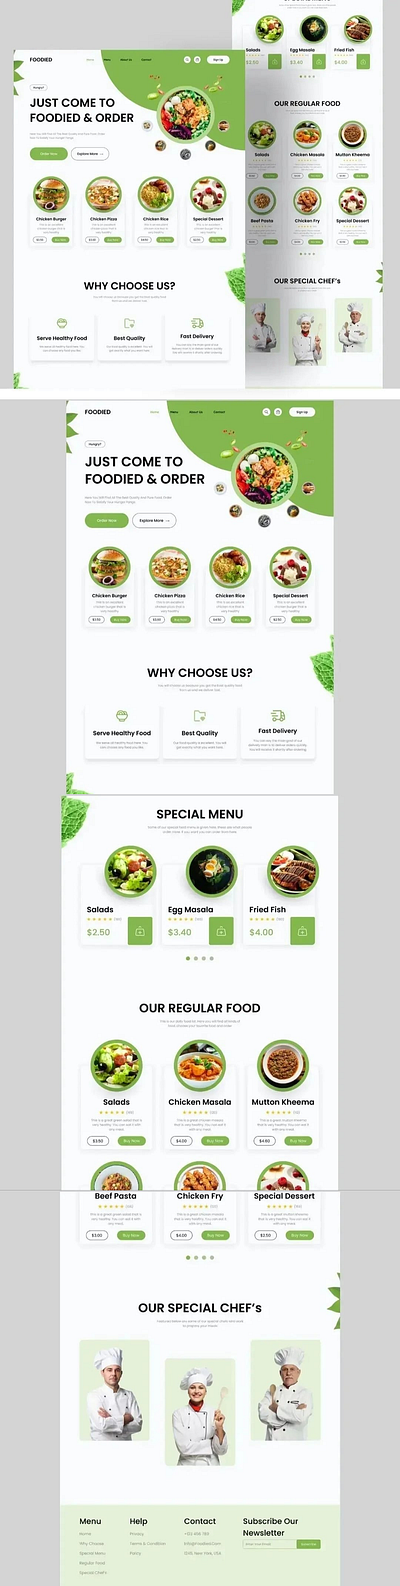 Food Delivery Website Landing Page app design food delivery website responsive design ui uiux ux design